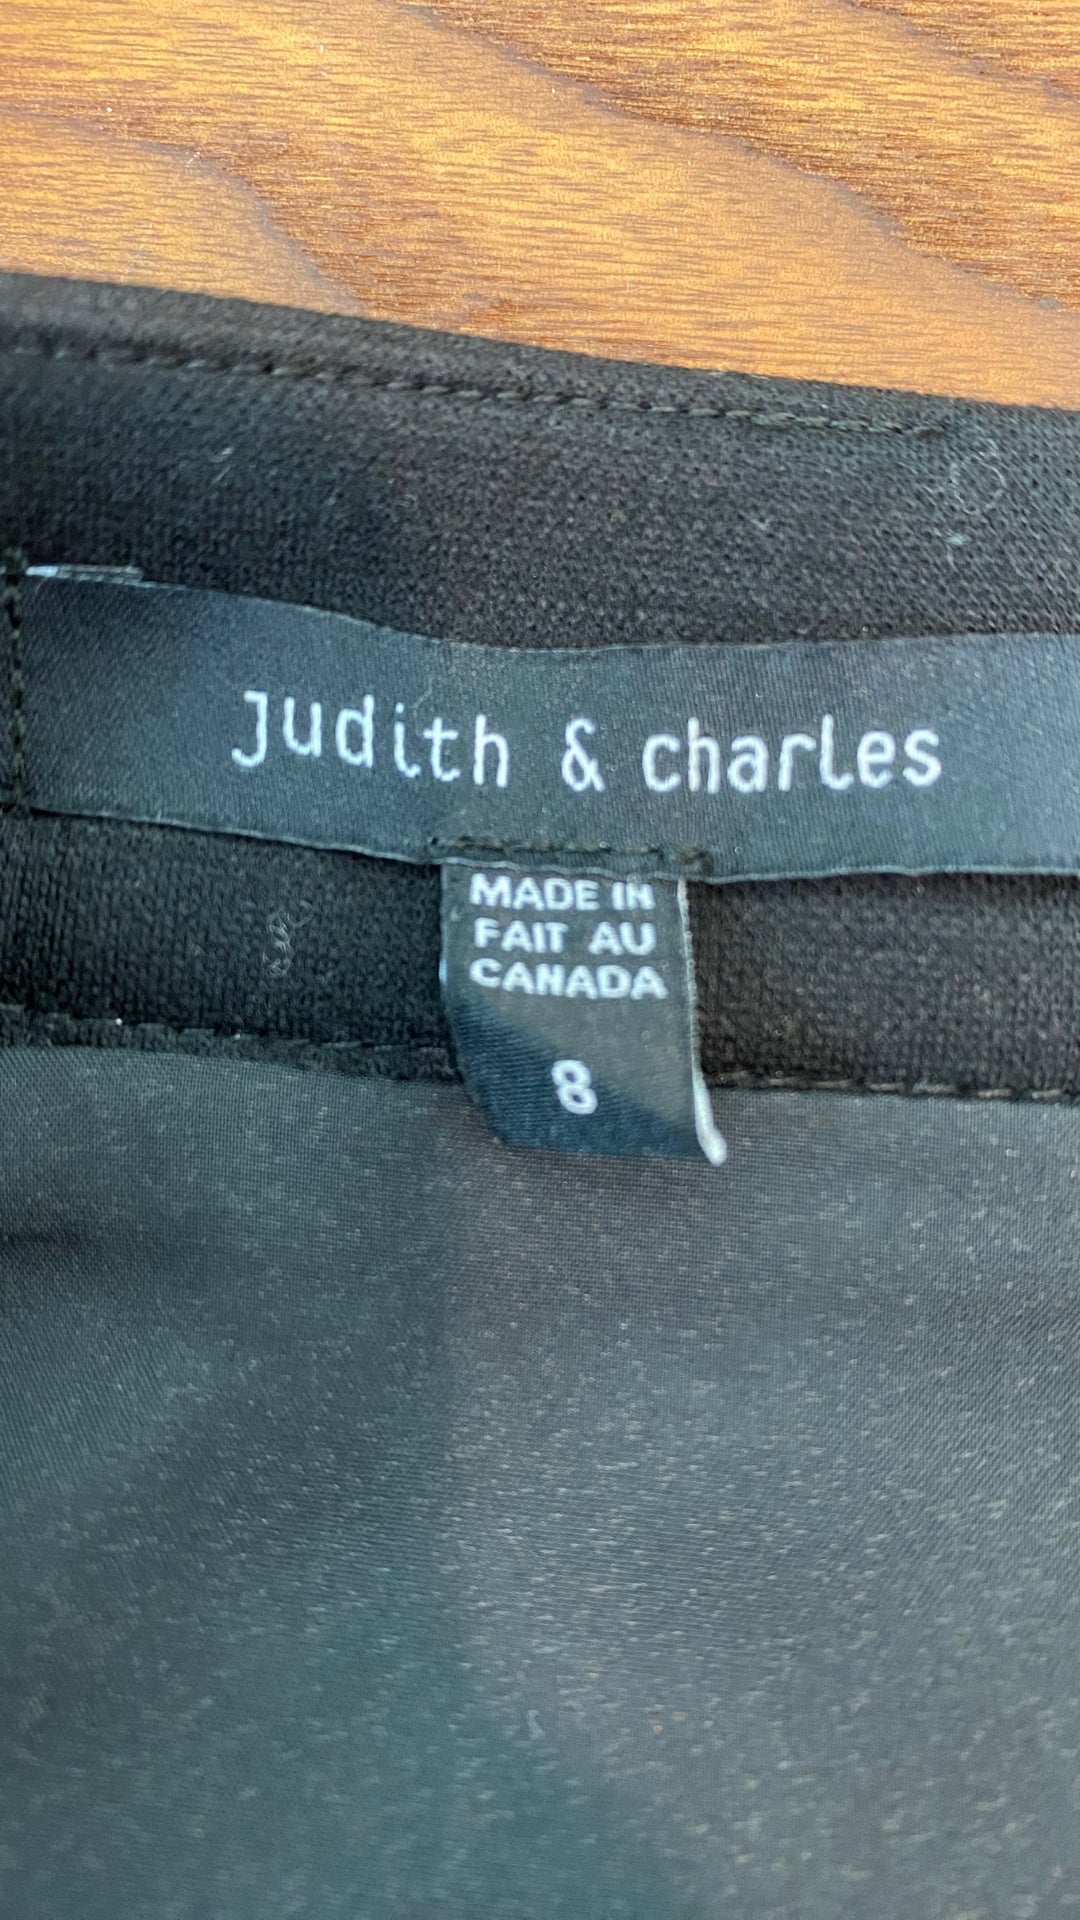 Jupe crayon en lainage à motif pied de poule Judith & Charles, taille 8. Vue de l'étiquette de marque et taille.